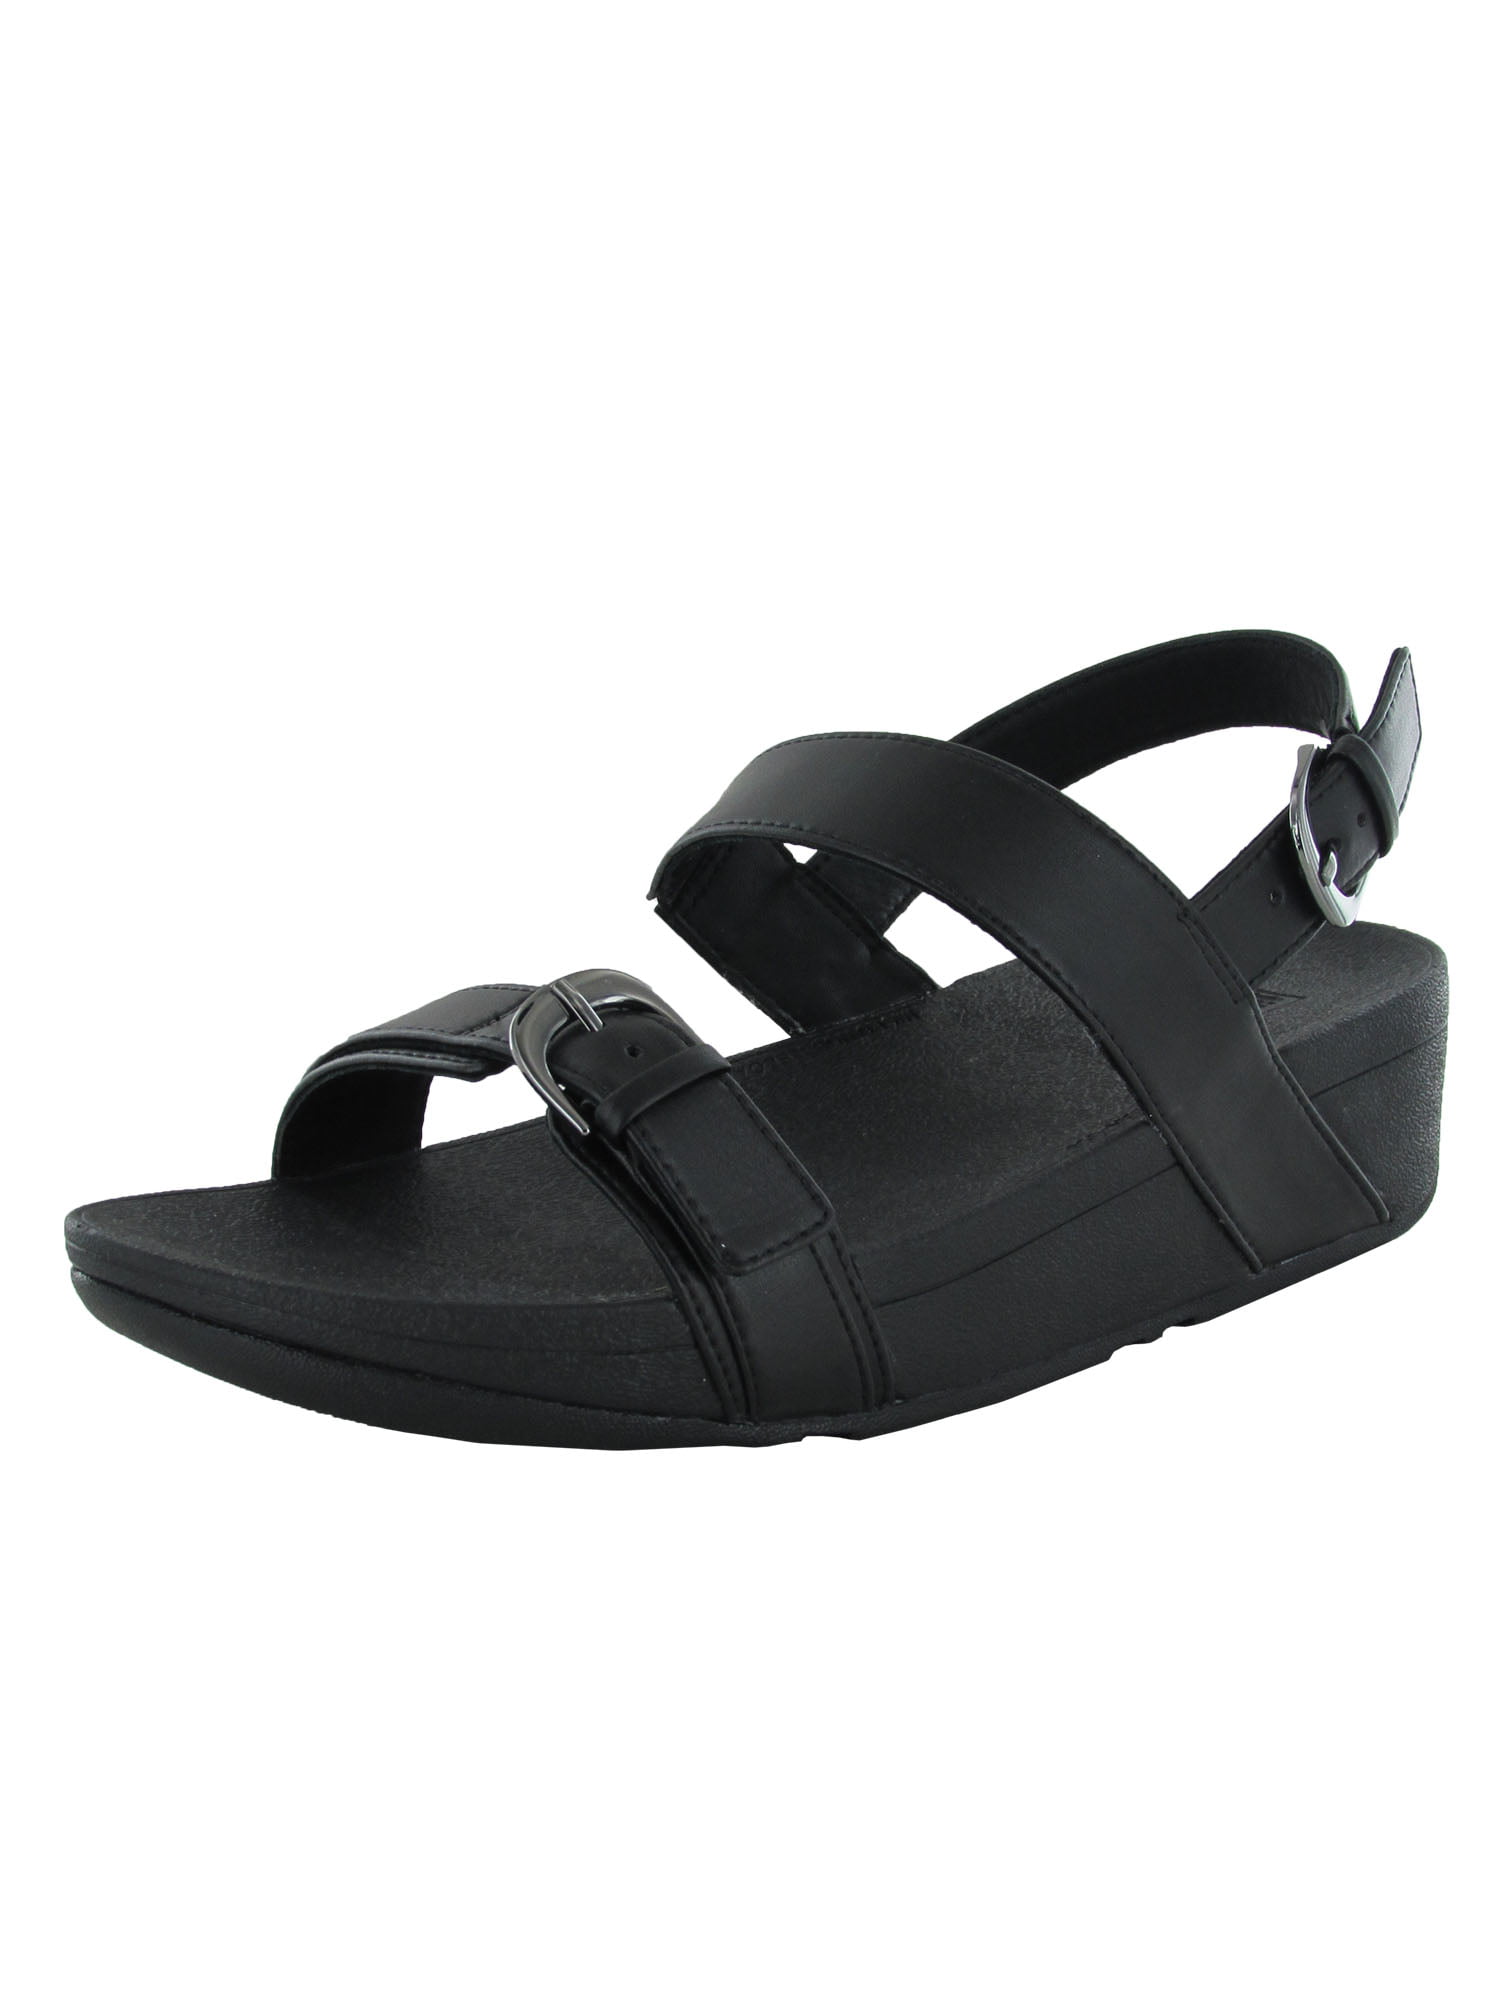 brugerdefinerede gennembore Besiddelse Fitflop Womens Veed Back Strap Sandal Shoes, All Black, US 9 - Walmart.com